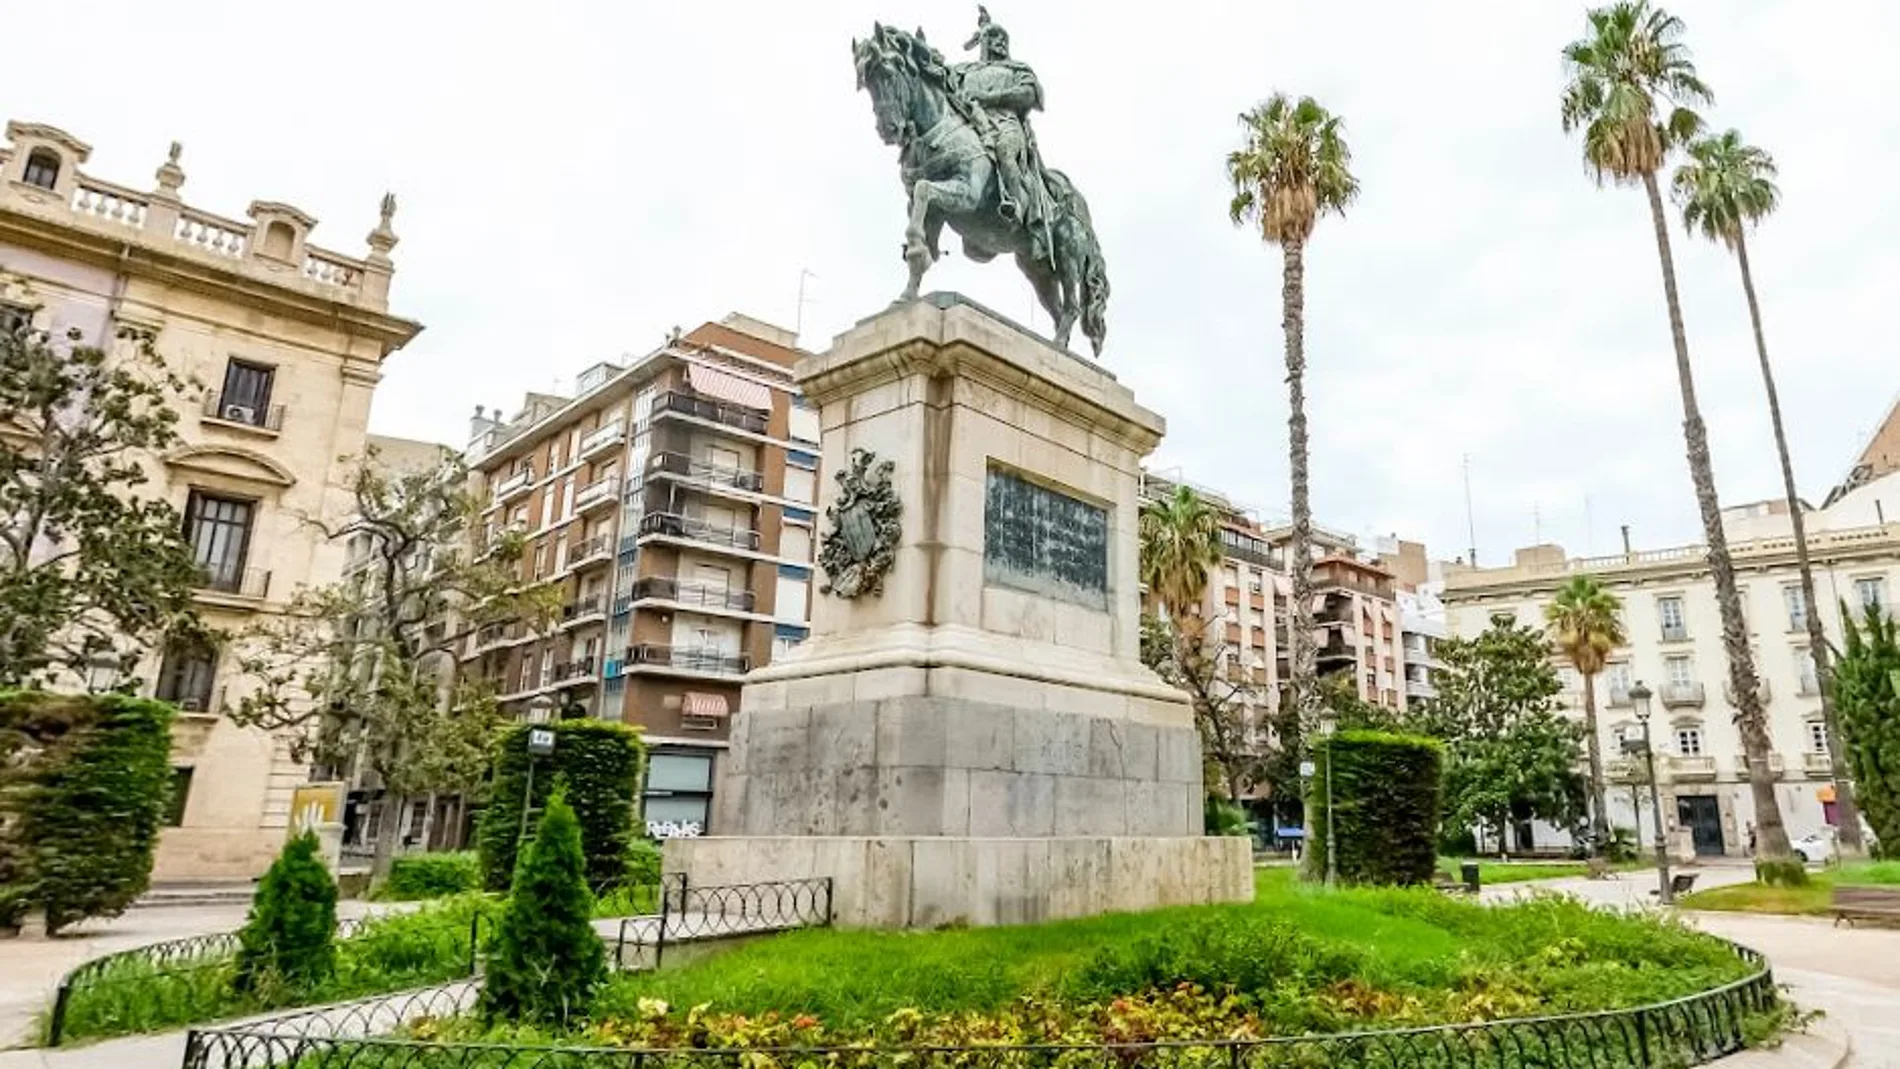 La estatua ecuestre de Jaume I esconde un objeto que muy pocos conocen